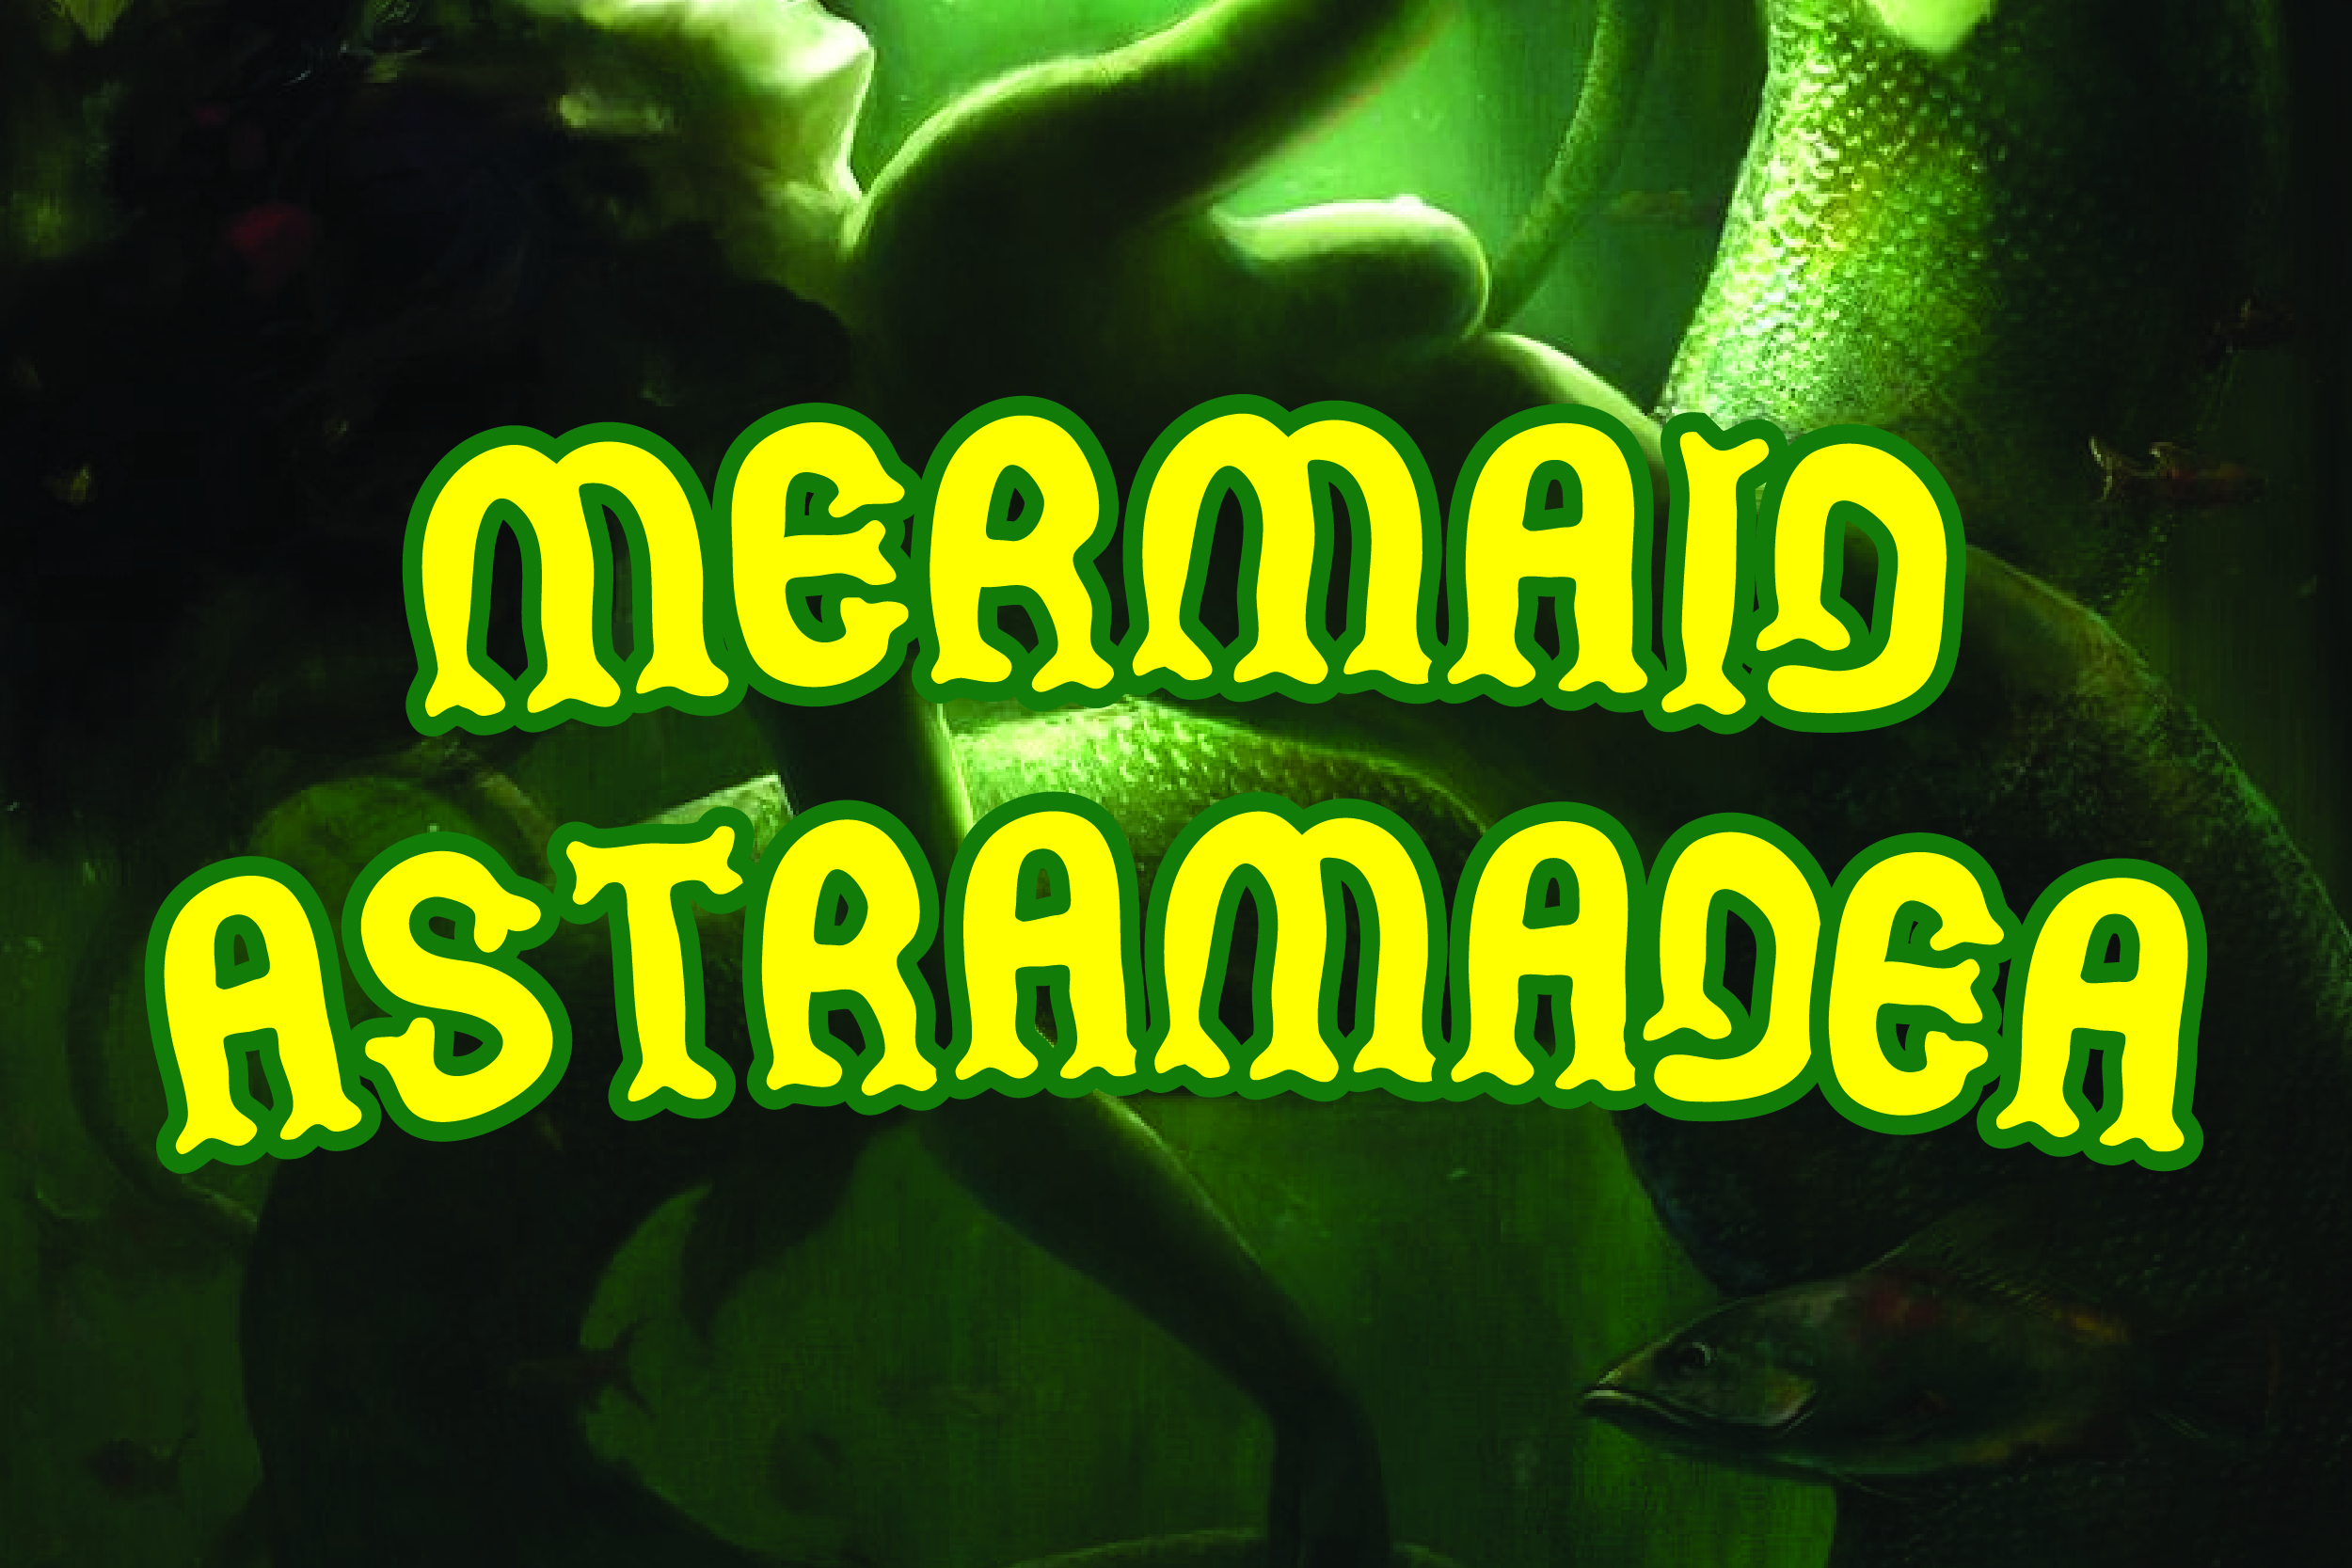 Mermaid Astramadea